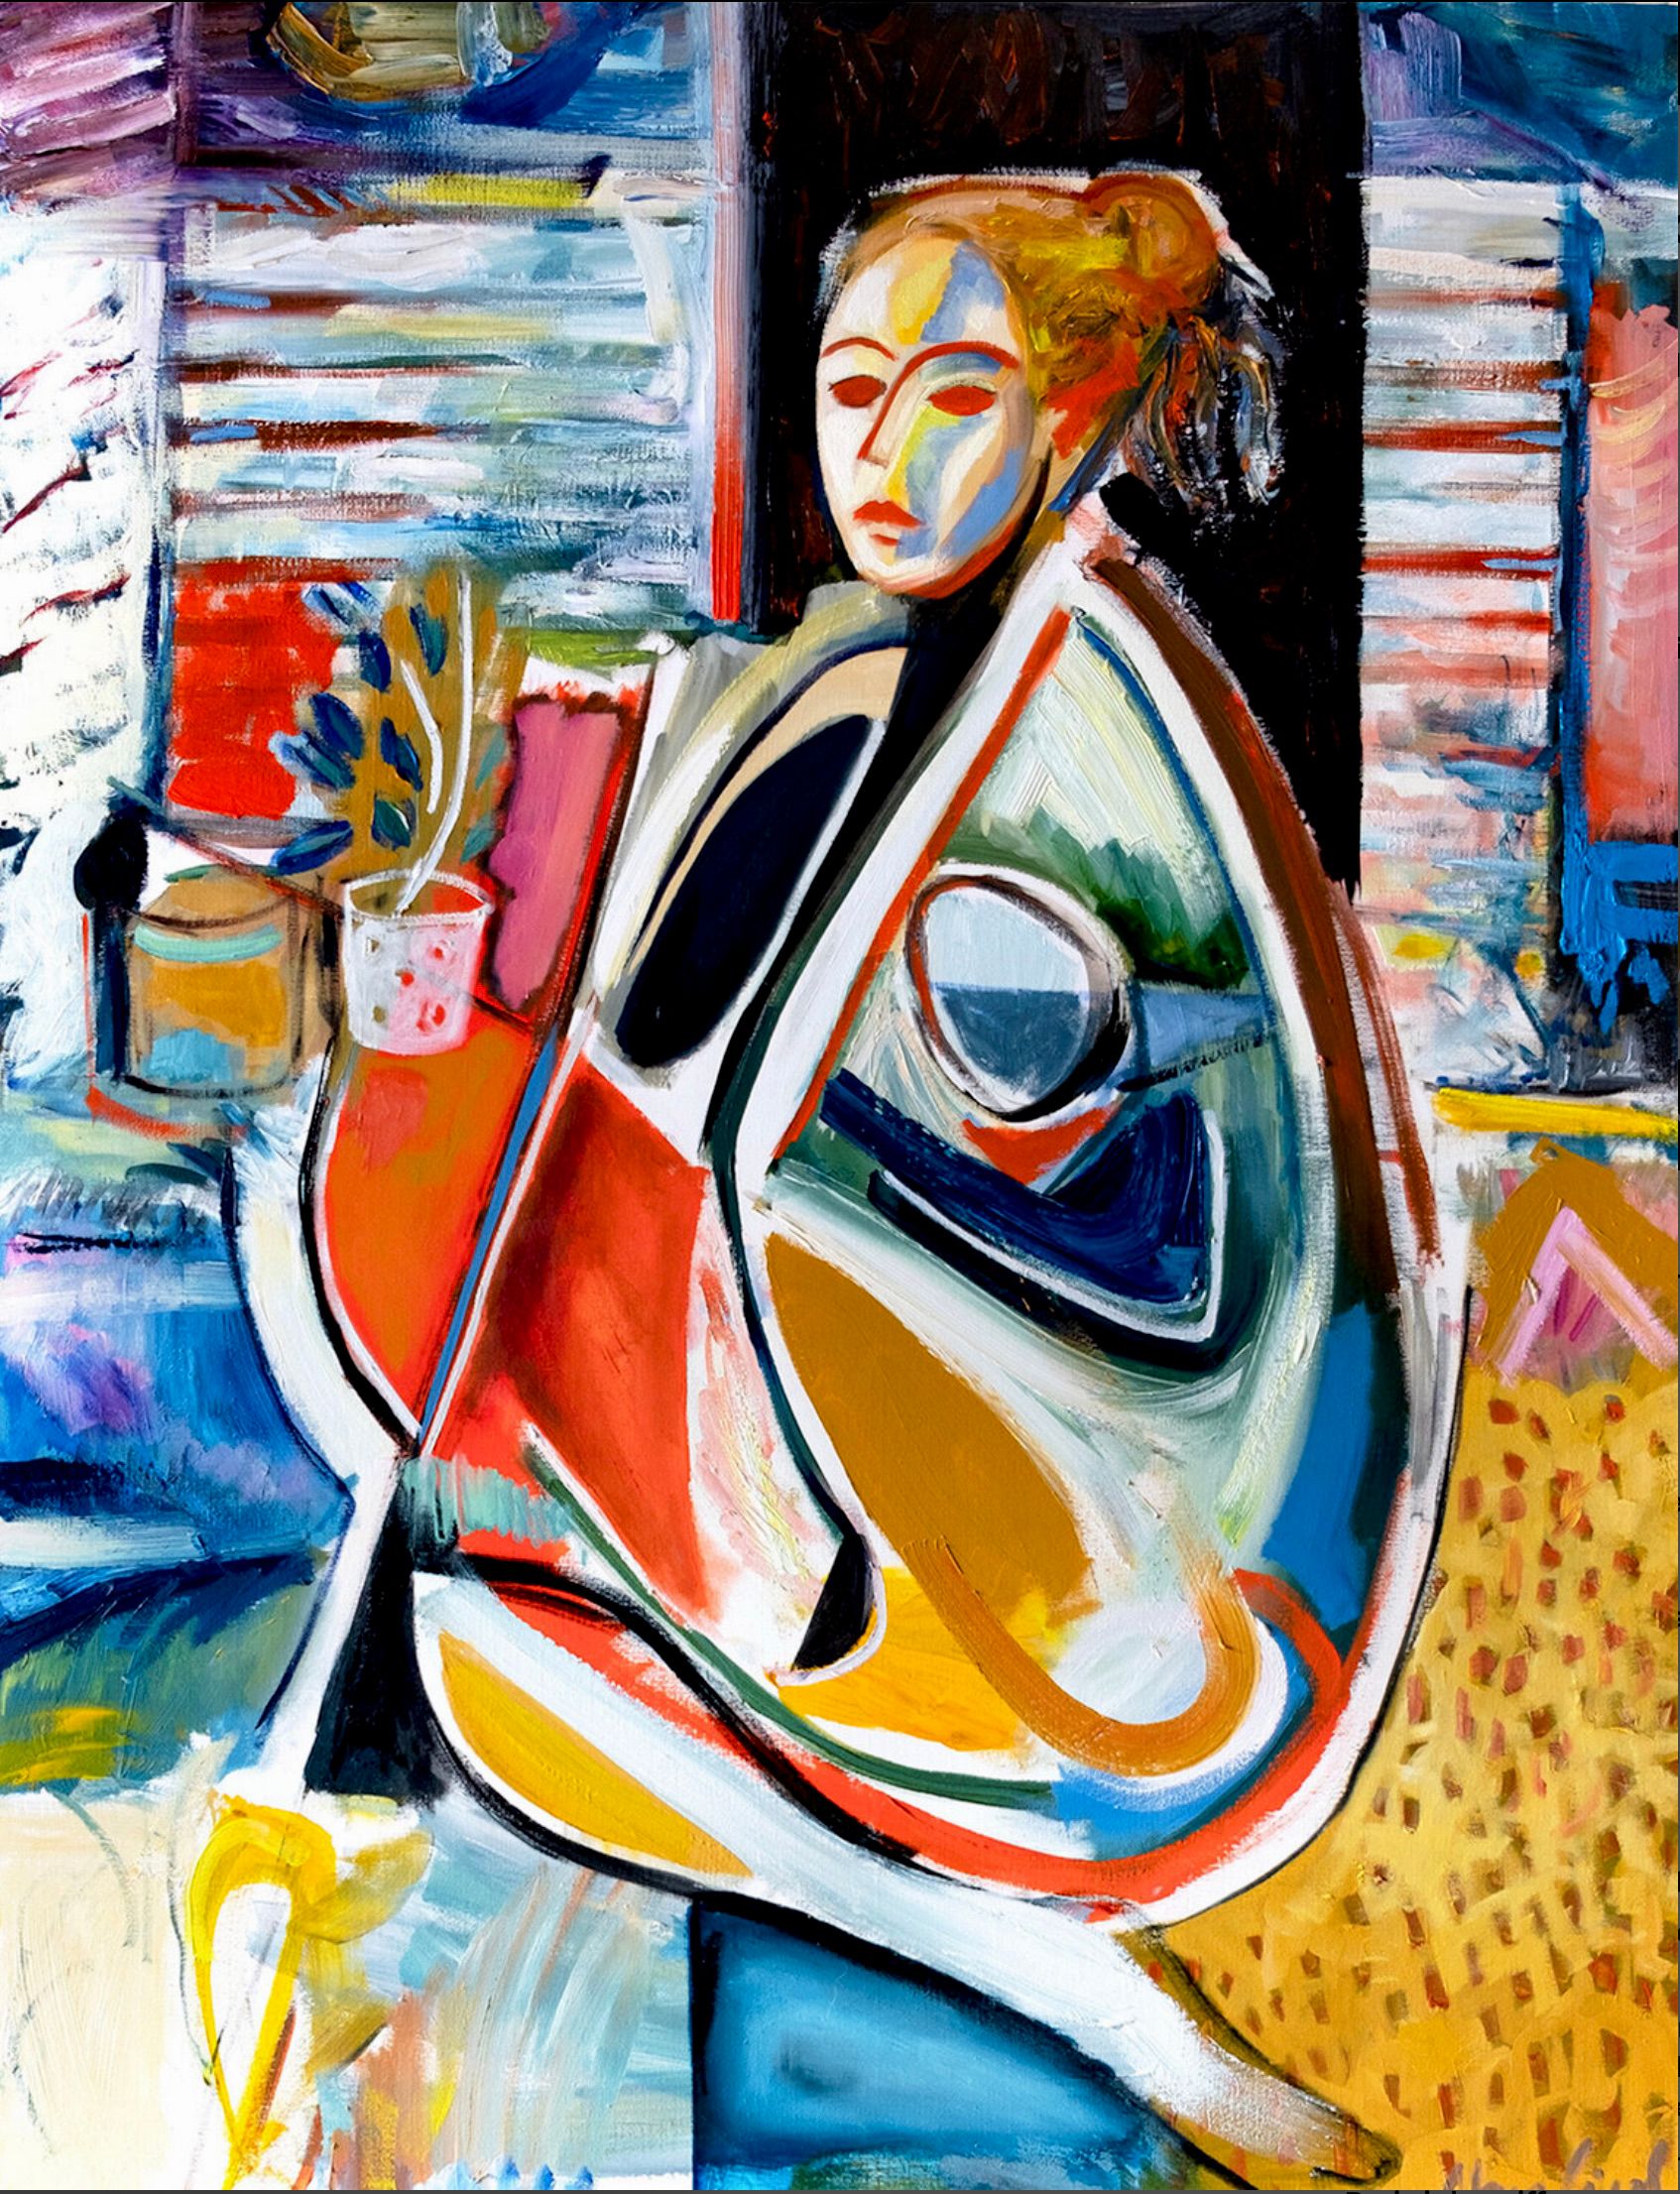 MECESLA Maciej Cieśla, "Donna in forme astratte, ragazza in studio", dipinto astratto di una ragazza sullo sfondo di oggetti in uno studio artistico. Una giovane modella in forme geometriche e combinazioni di colori aggressivi con accenti rossi.